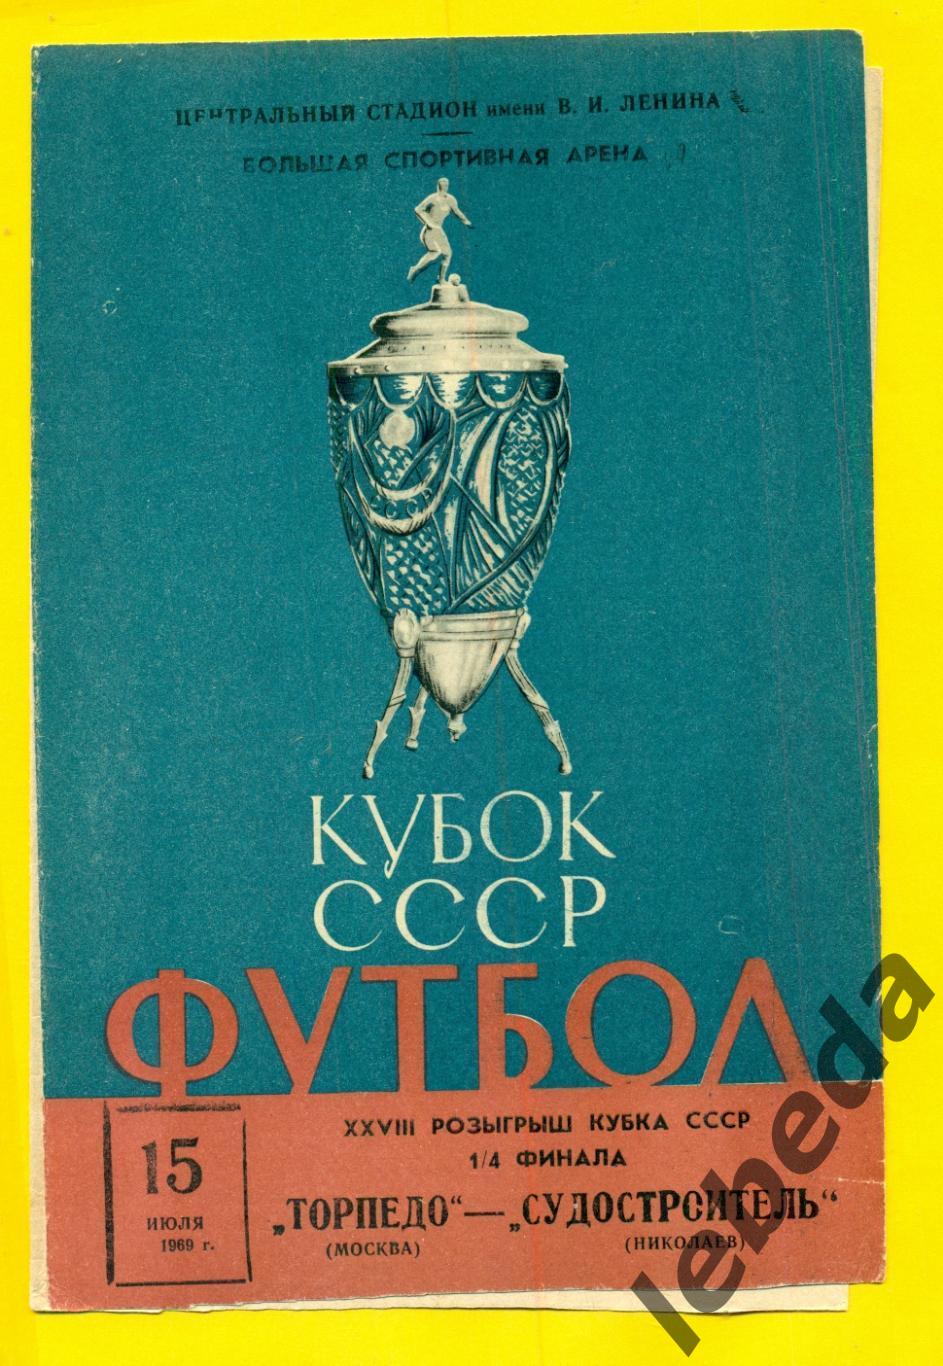 Торпедо Москва - Судостроитель Николаев -1969 г. Кубок СССР - 1/4